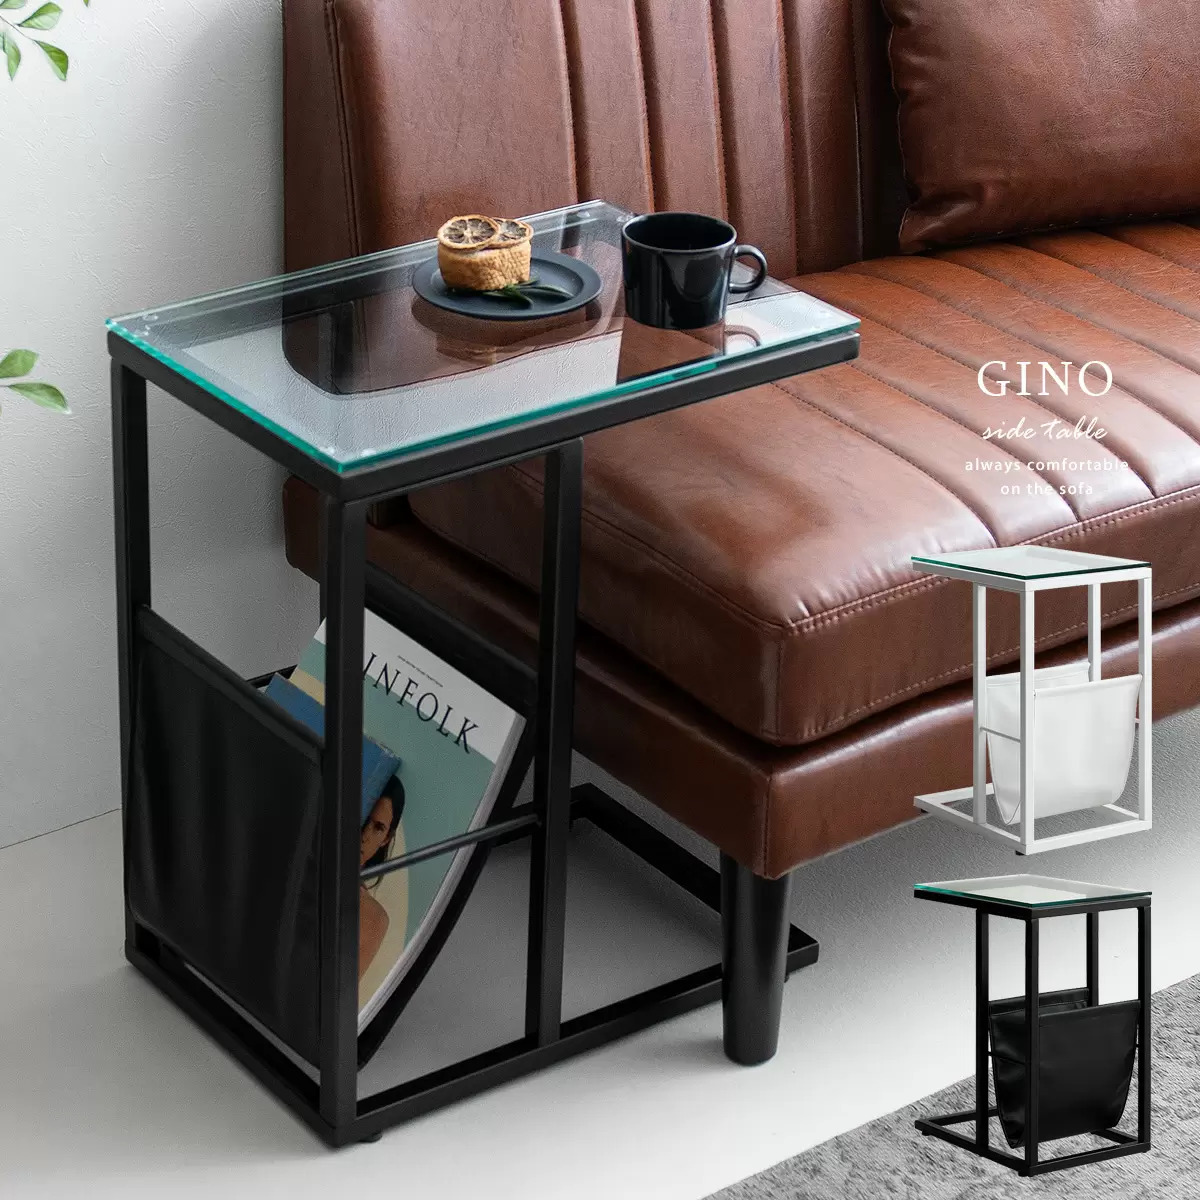 リビングや寝室、玄関などに置きやすいサイドテーブルおすすめ12選 │ Air Rhizome magazine エア・リゾーム マガジン